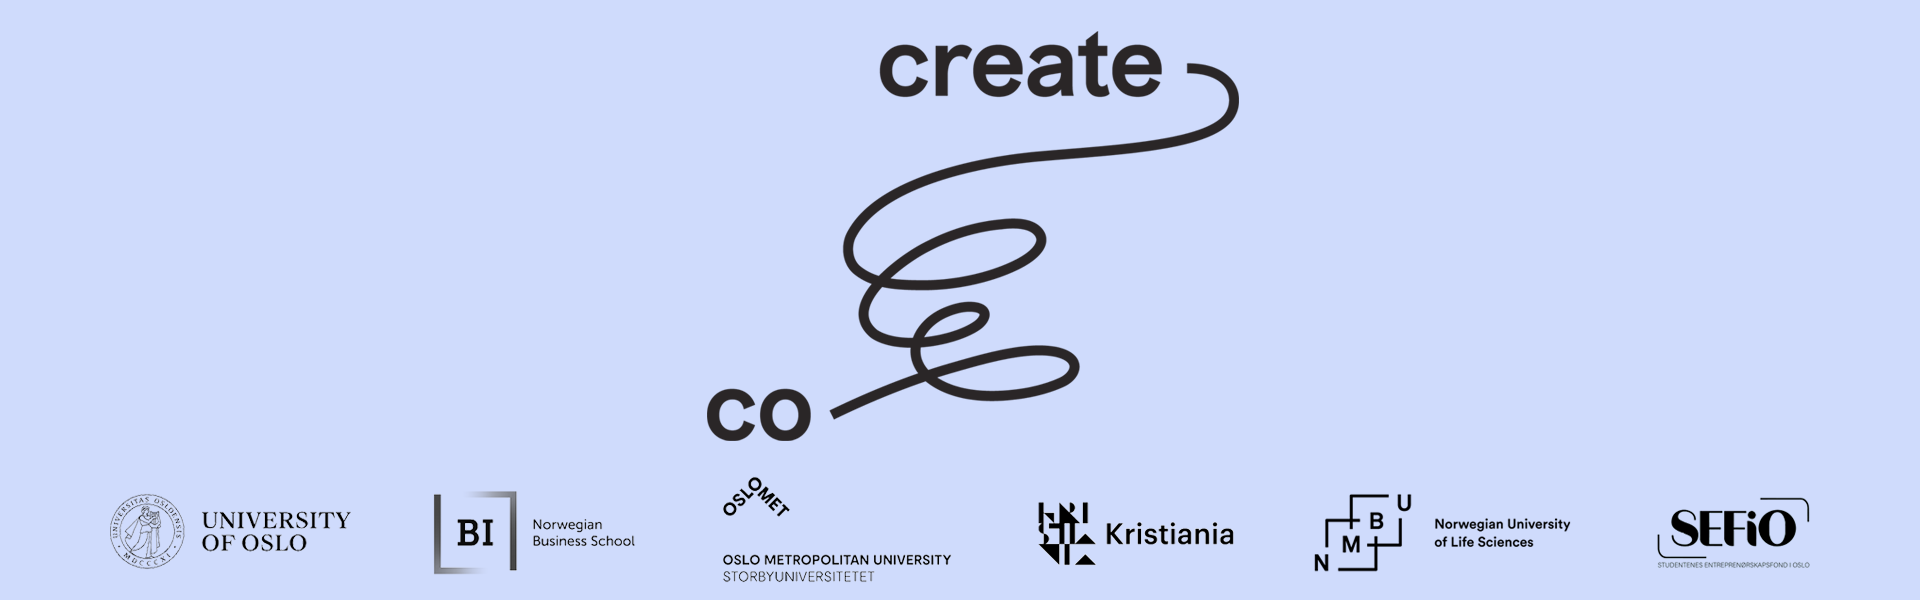 Logo Co-Create med logo til samarbeidspartnerne på engelsk